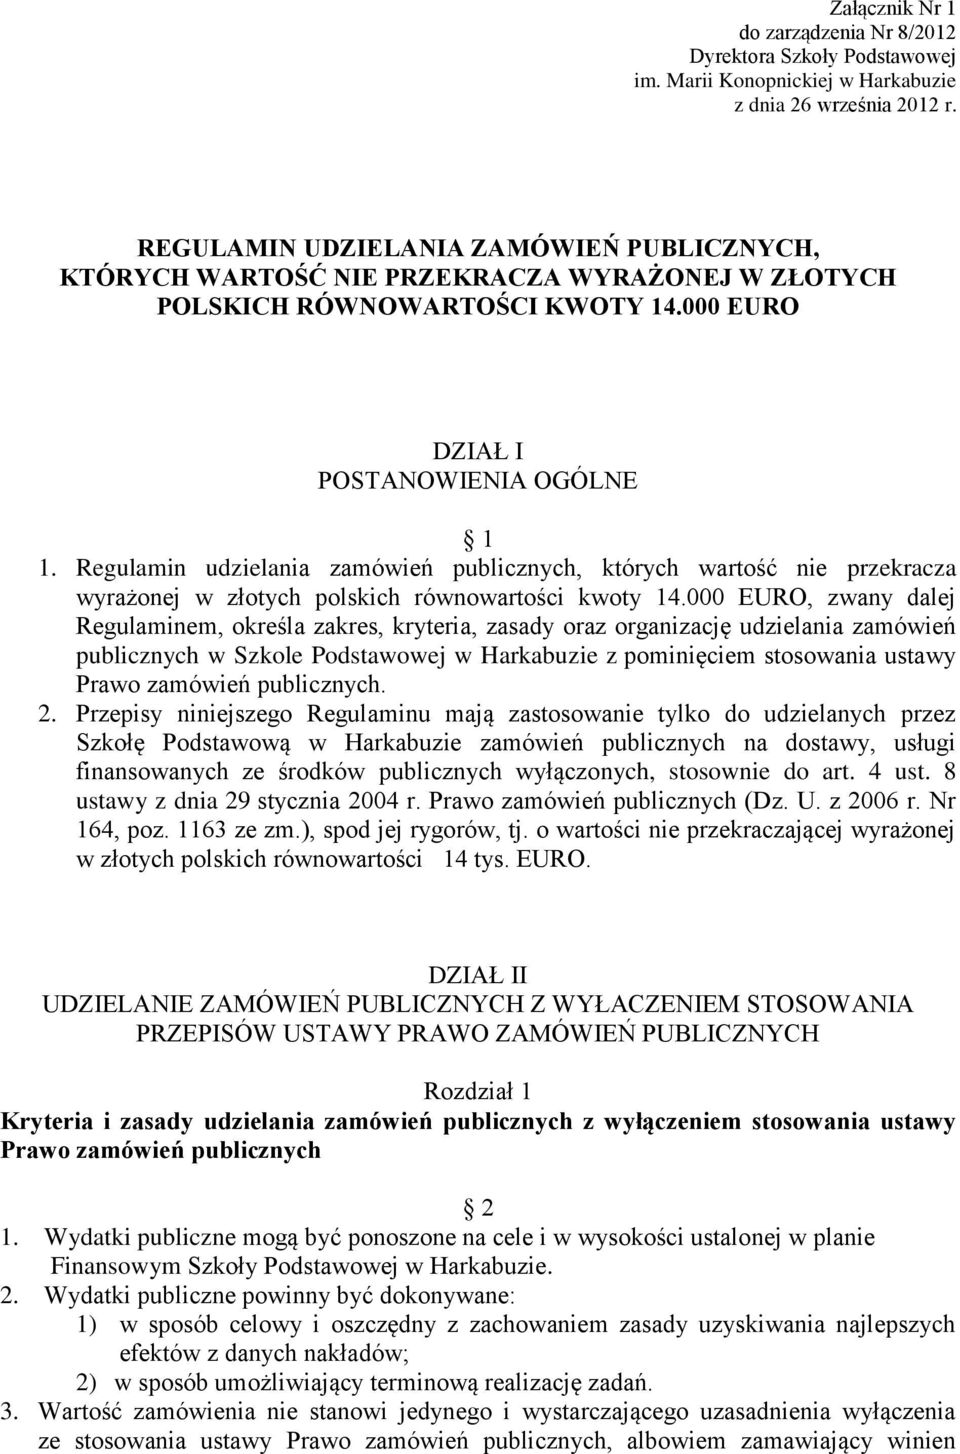 Regulamin udzielania zamówień publicznych, których wartość nie przekracza wyrażonej w złotych polskich równowartości kwoty 14.